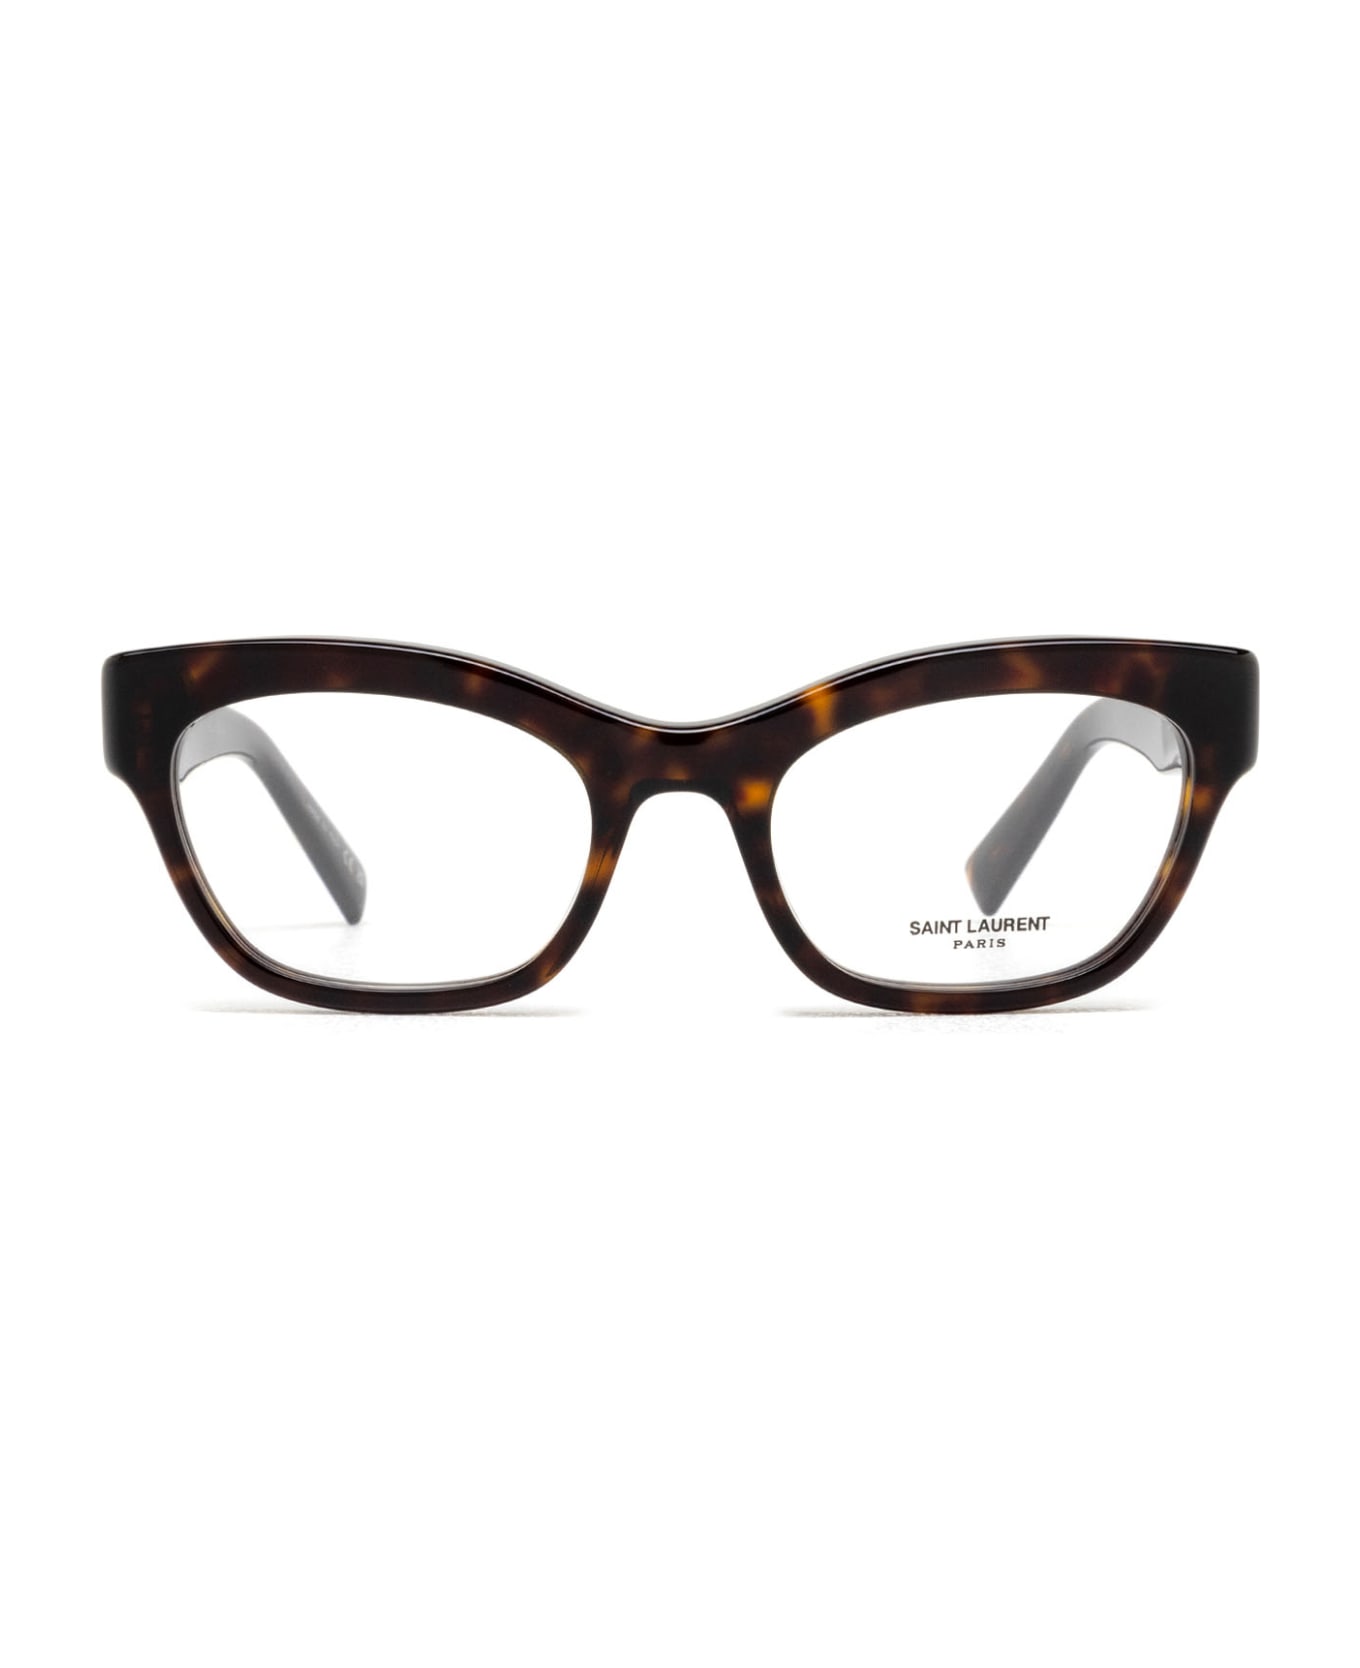 Saint Laurent Eyewear Sl 643 Havana Glasses - Havana アイウェア